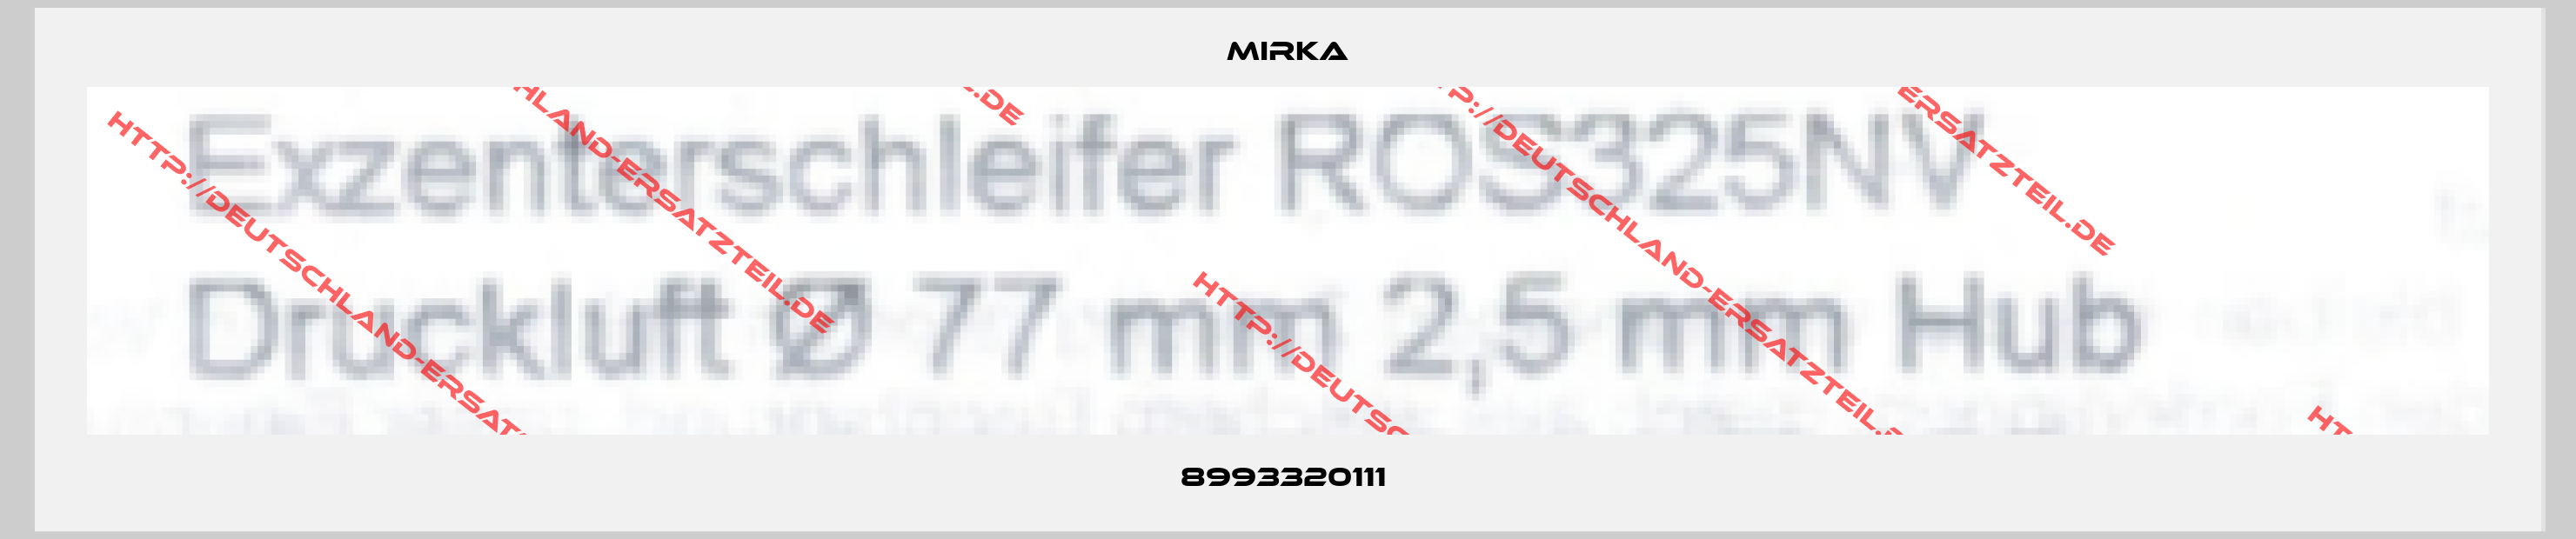 Mirka-8993320111 